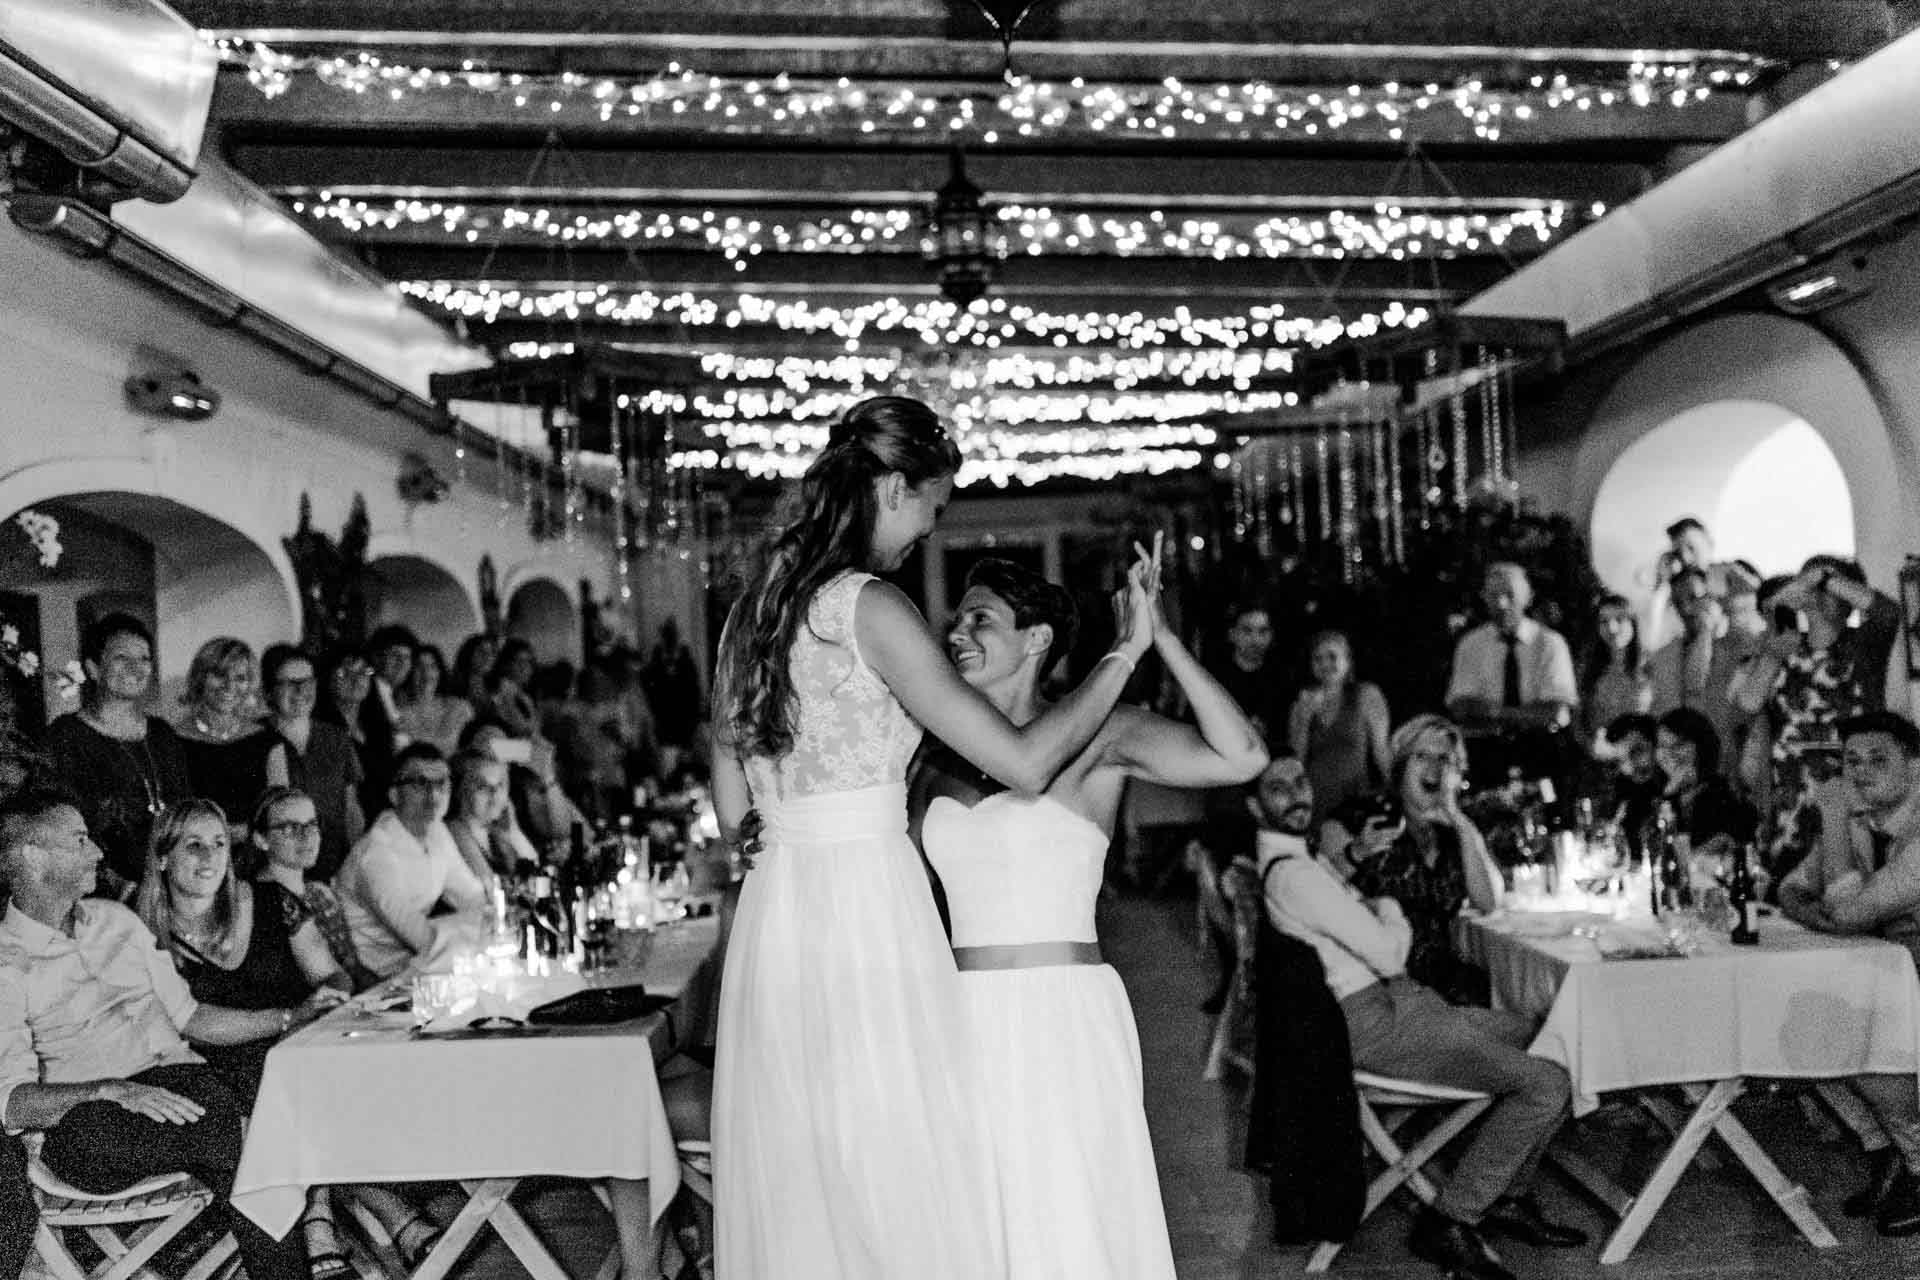 Hochzeitslocation die Träumerei Wien Hochzeitsfotograf Bohohochzeit Vintagehochzeit freie Trauung